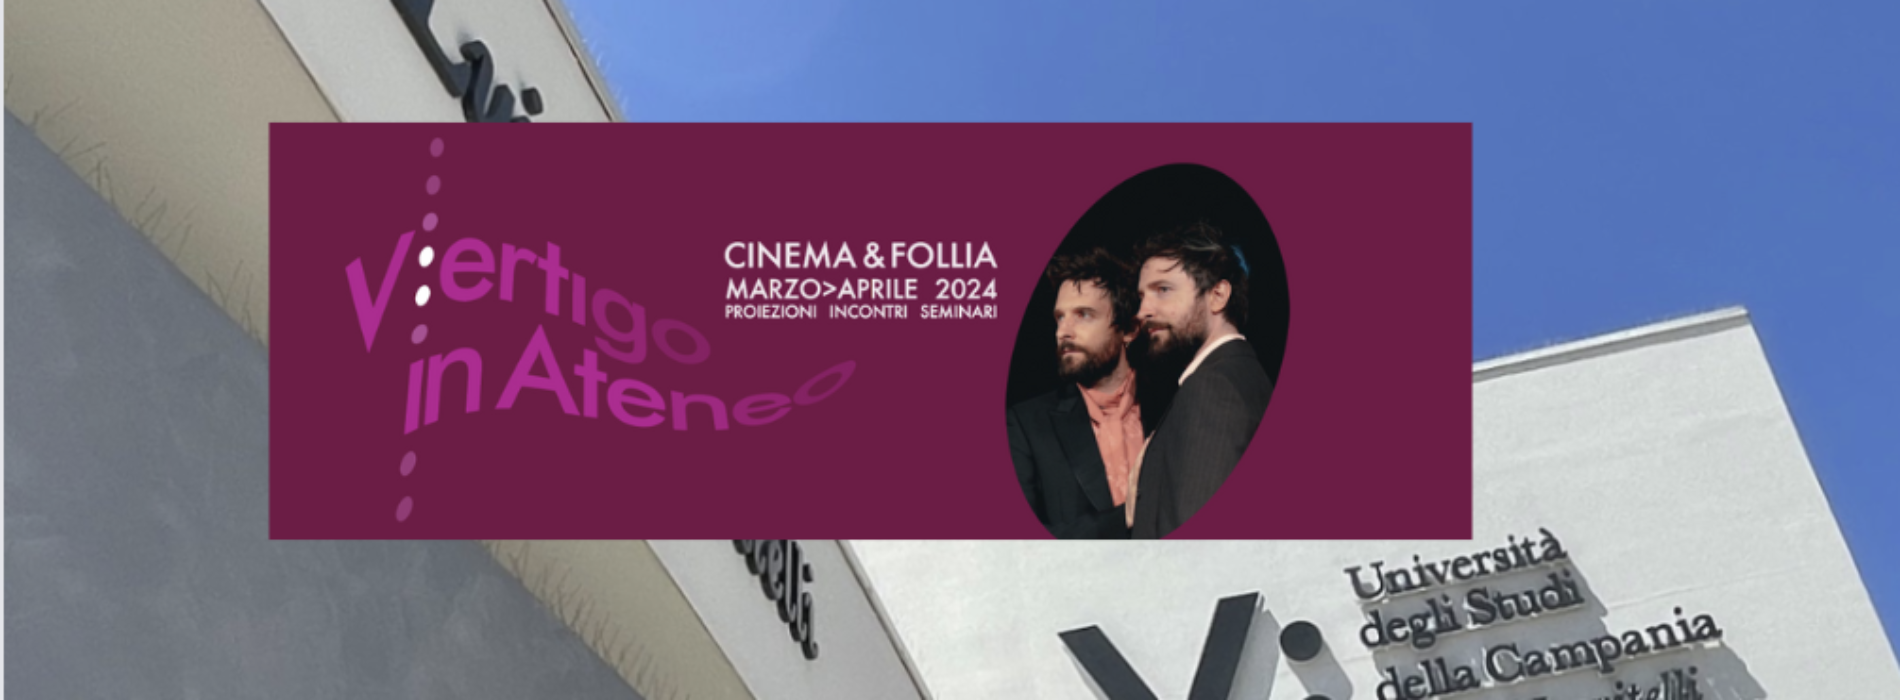 V:ertigo, in Ateneo i registi Fabio e Damiano D’Innocenzo